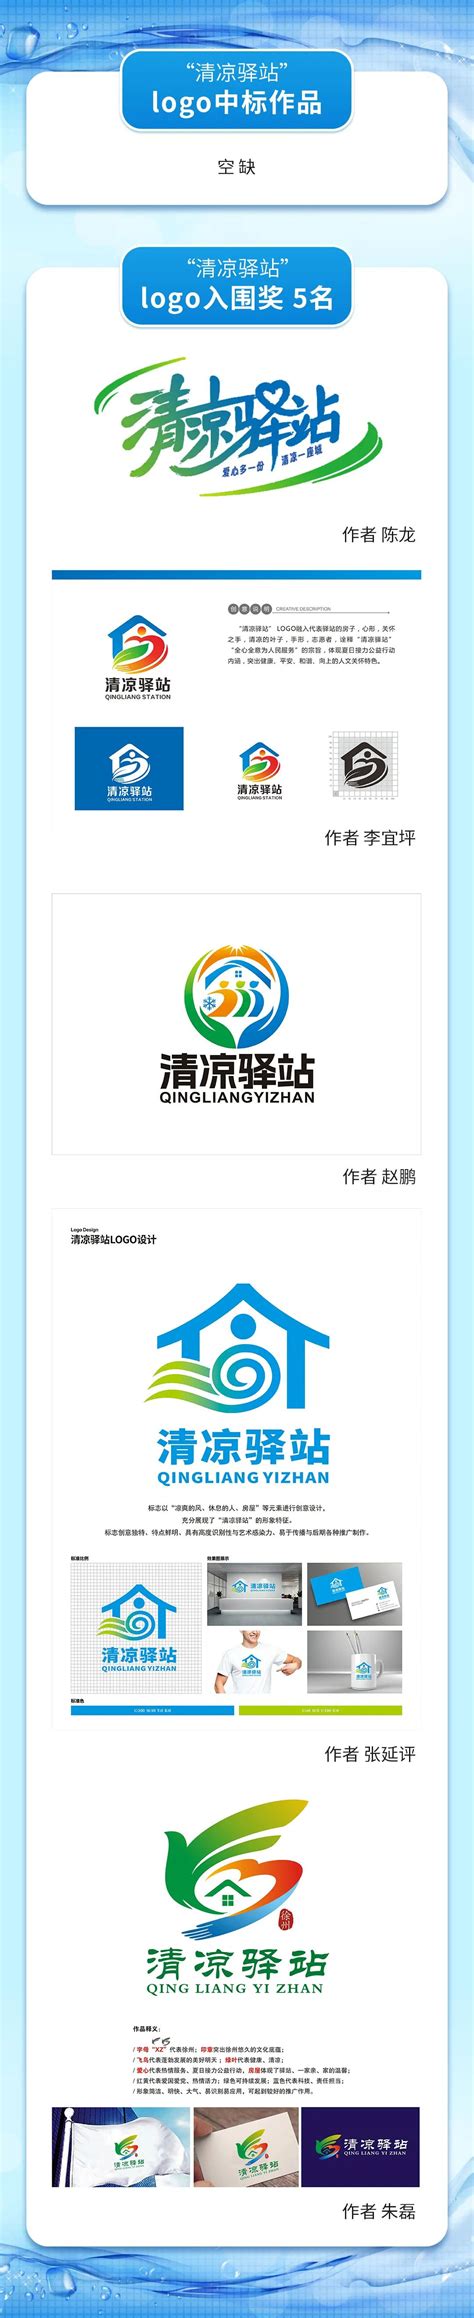 徐州报业传媒集团征集“清凉驿站”标志（LOGO） 及吉祥物设计方案揭晓-设计揭晓-设计大赛网